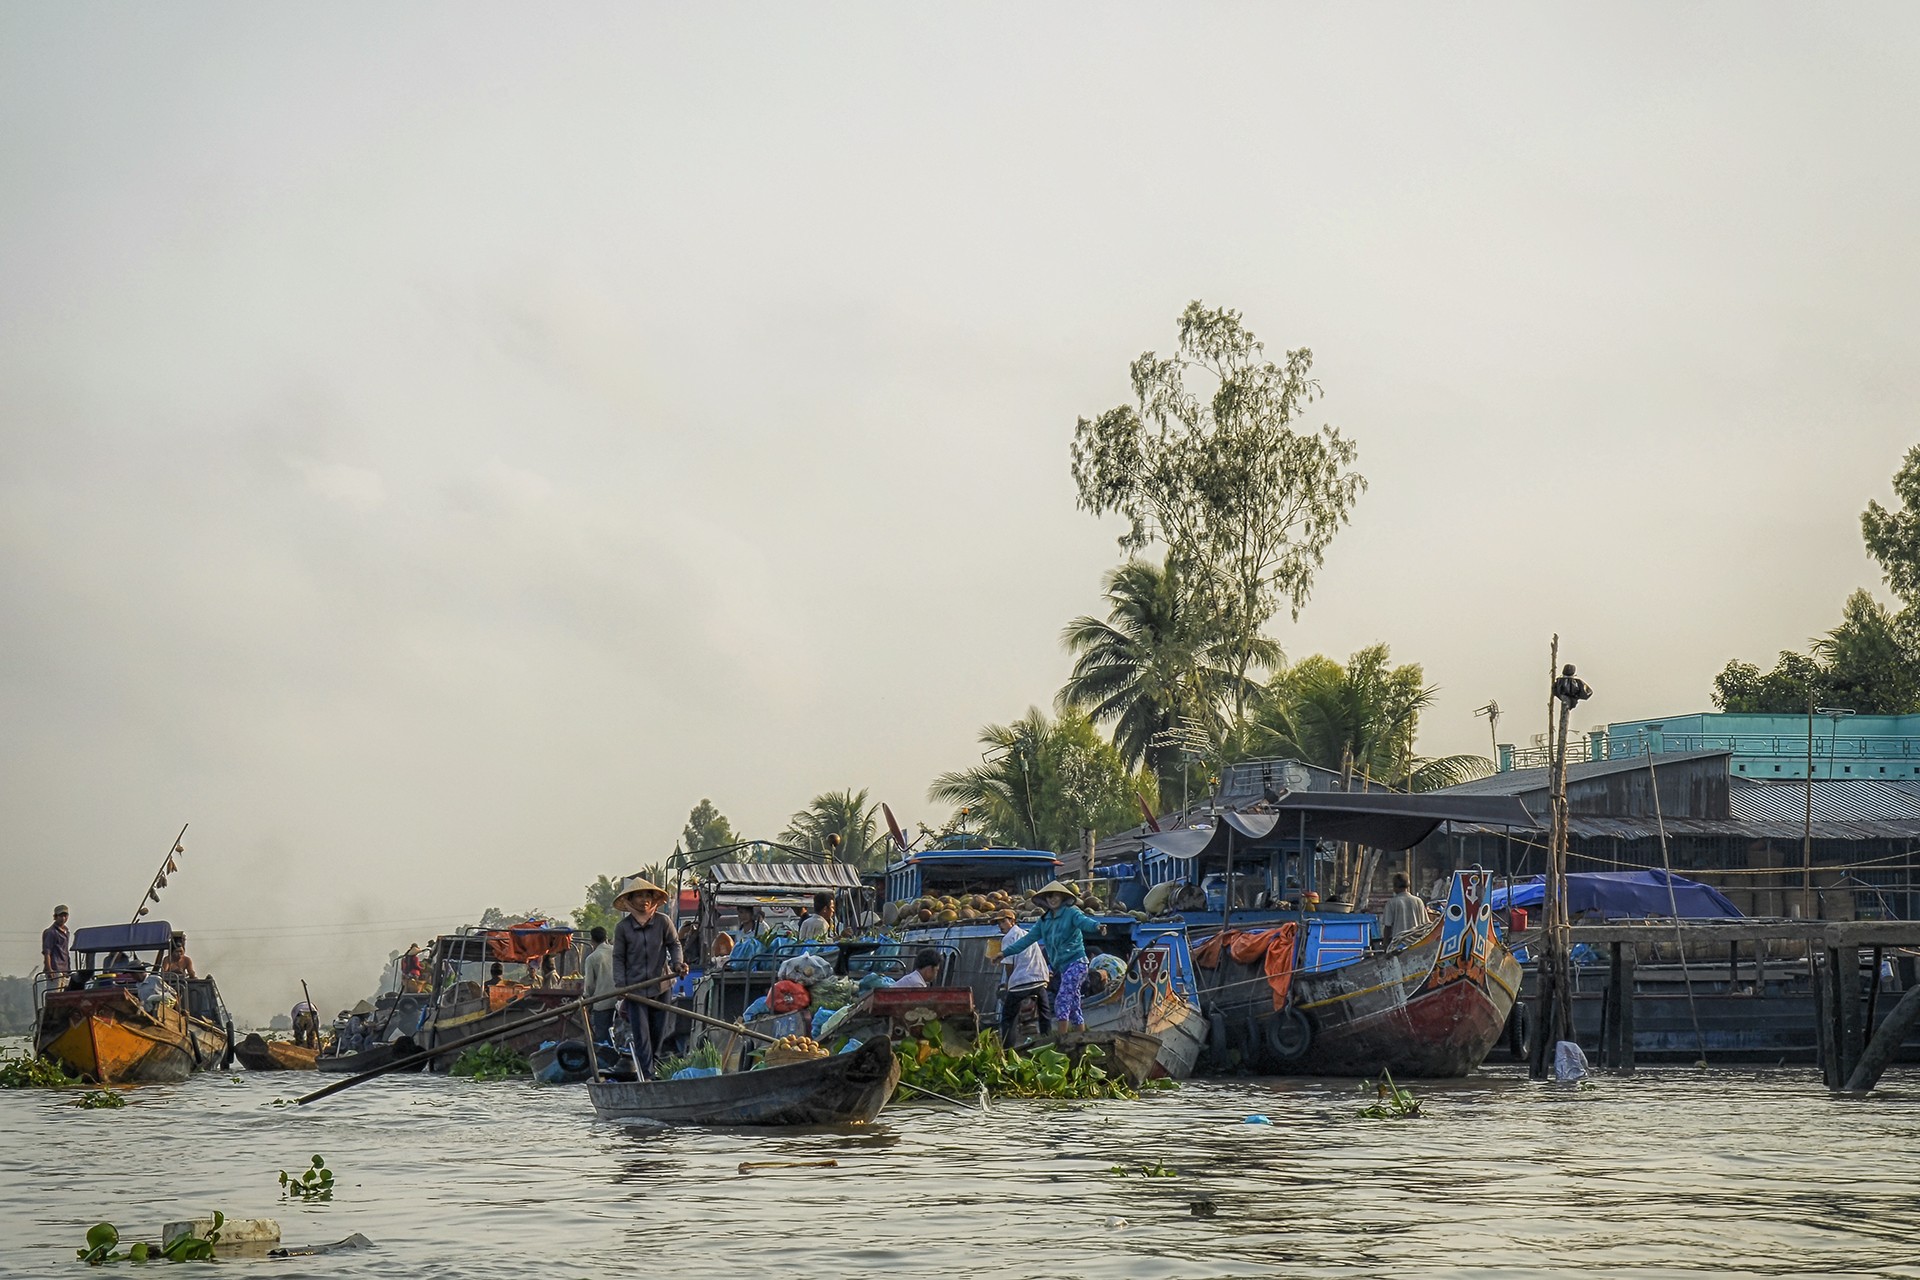 Les marchés flottants du mekong 13 